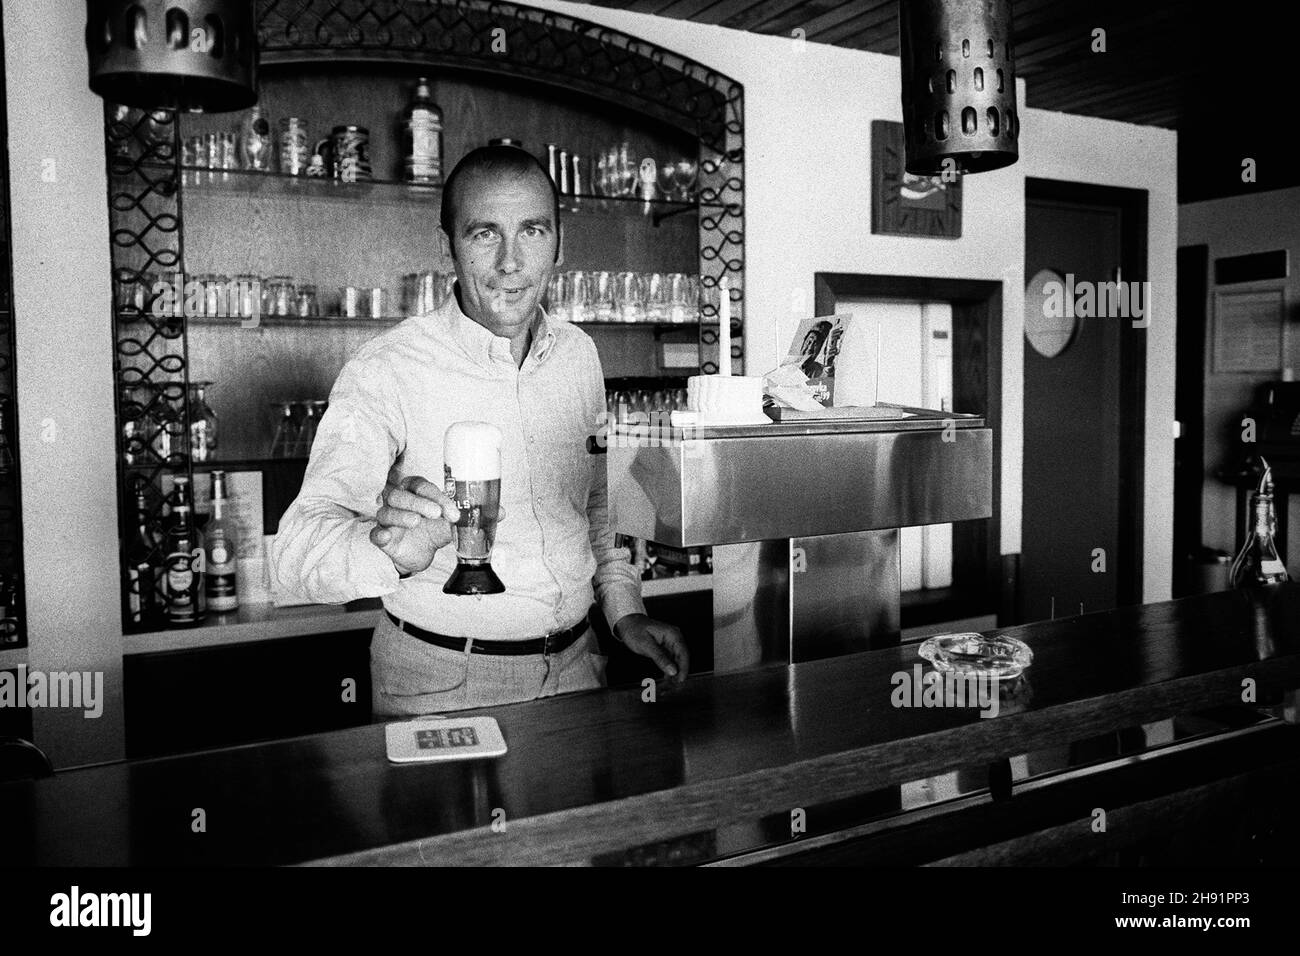 Horst Eckel est mort aujourd'hui (3 décembre 2021)!Horst ECKEL, Allemagne, ancien joueur de football, champion du monde de football de 1954, se tient derrière le comptoir dans un restaurant et prend une bière, demi-figure, 02.25.1973. Vé-ÇvÇ Banque D'Images